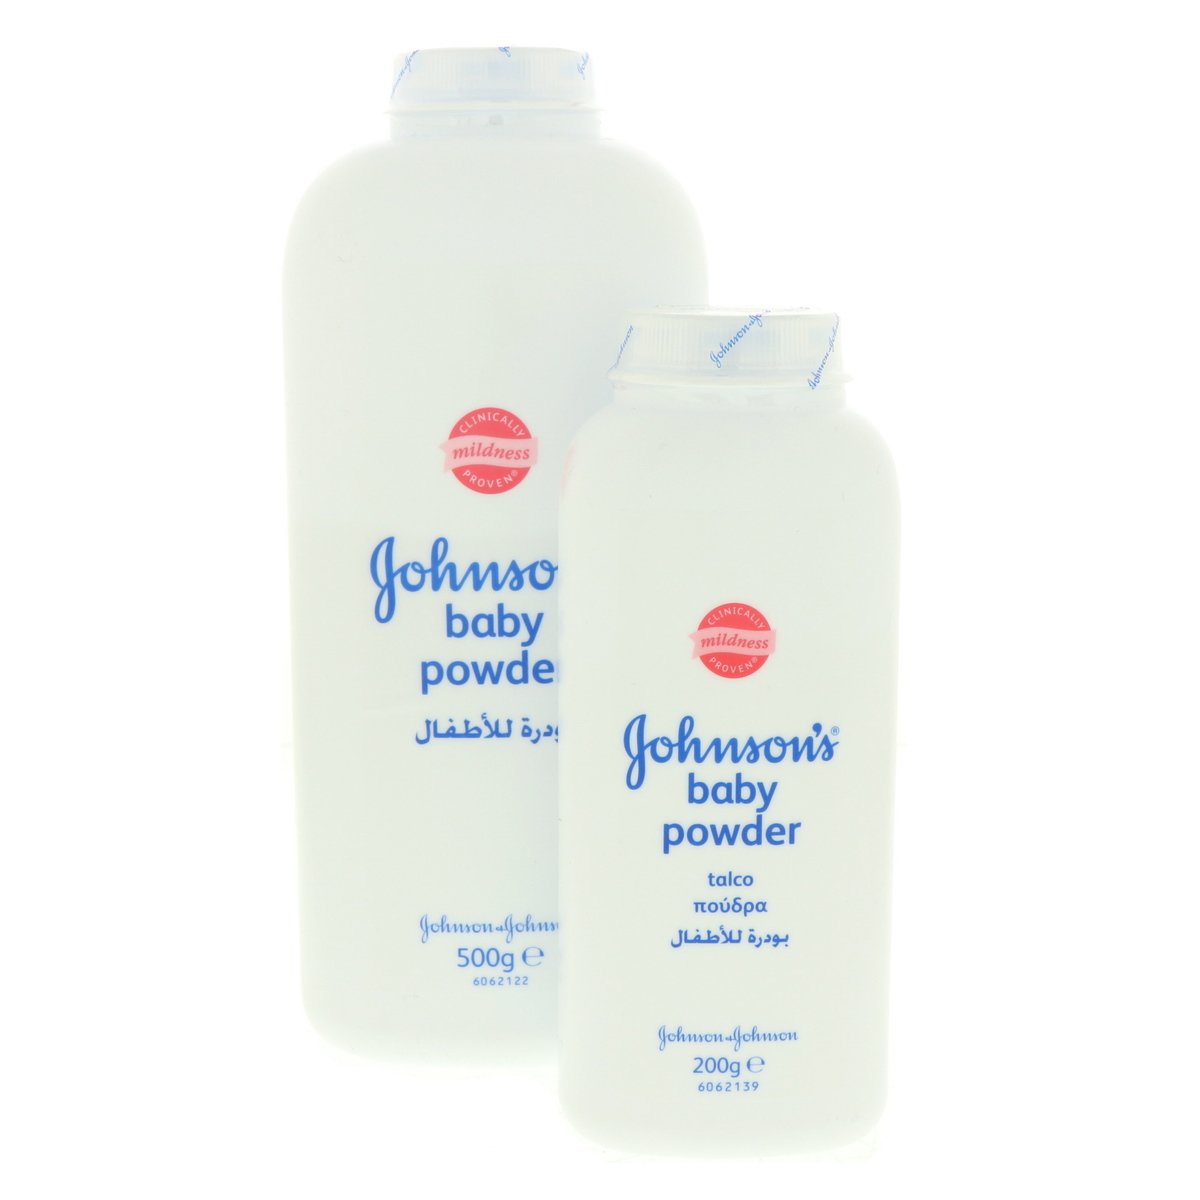 Johnsons Baby Powder 500g + 200g